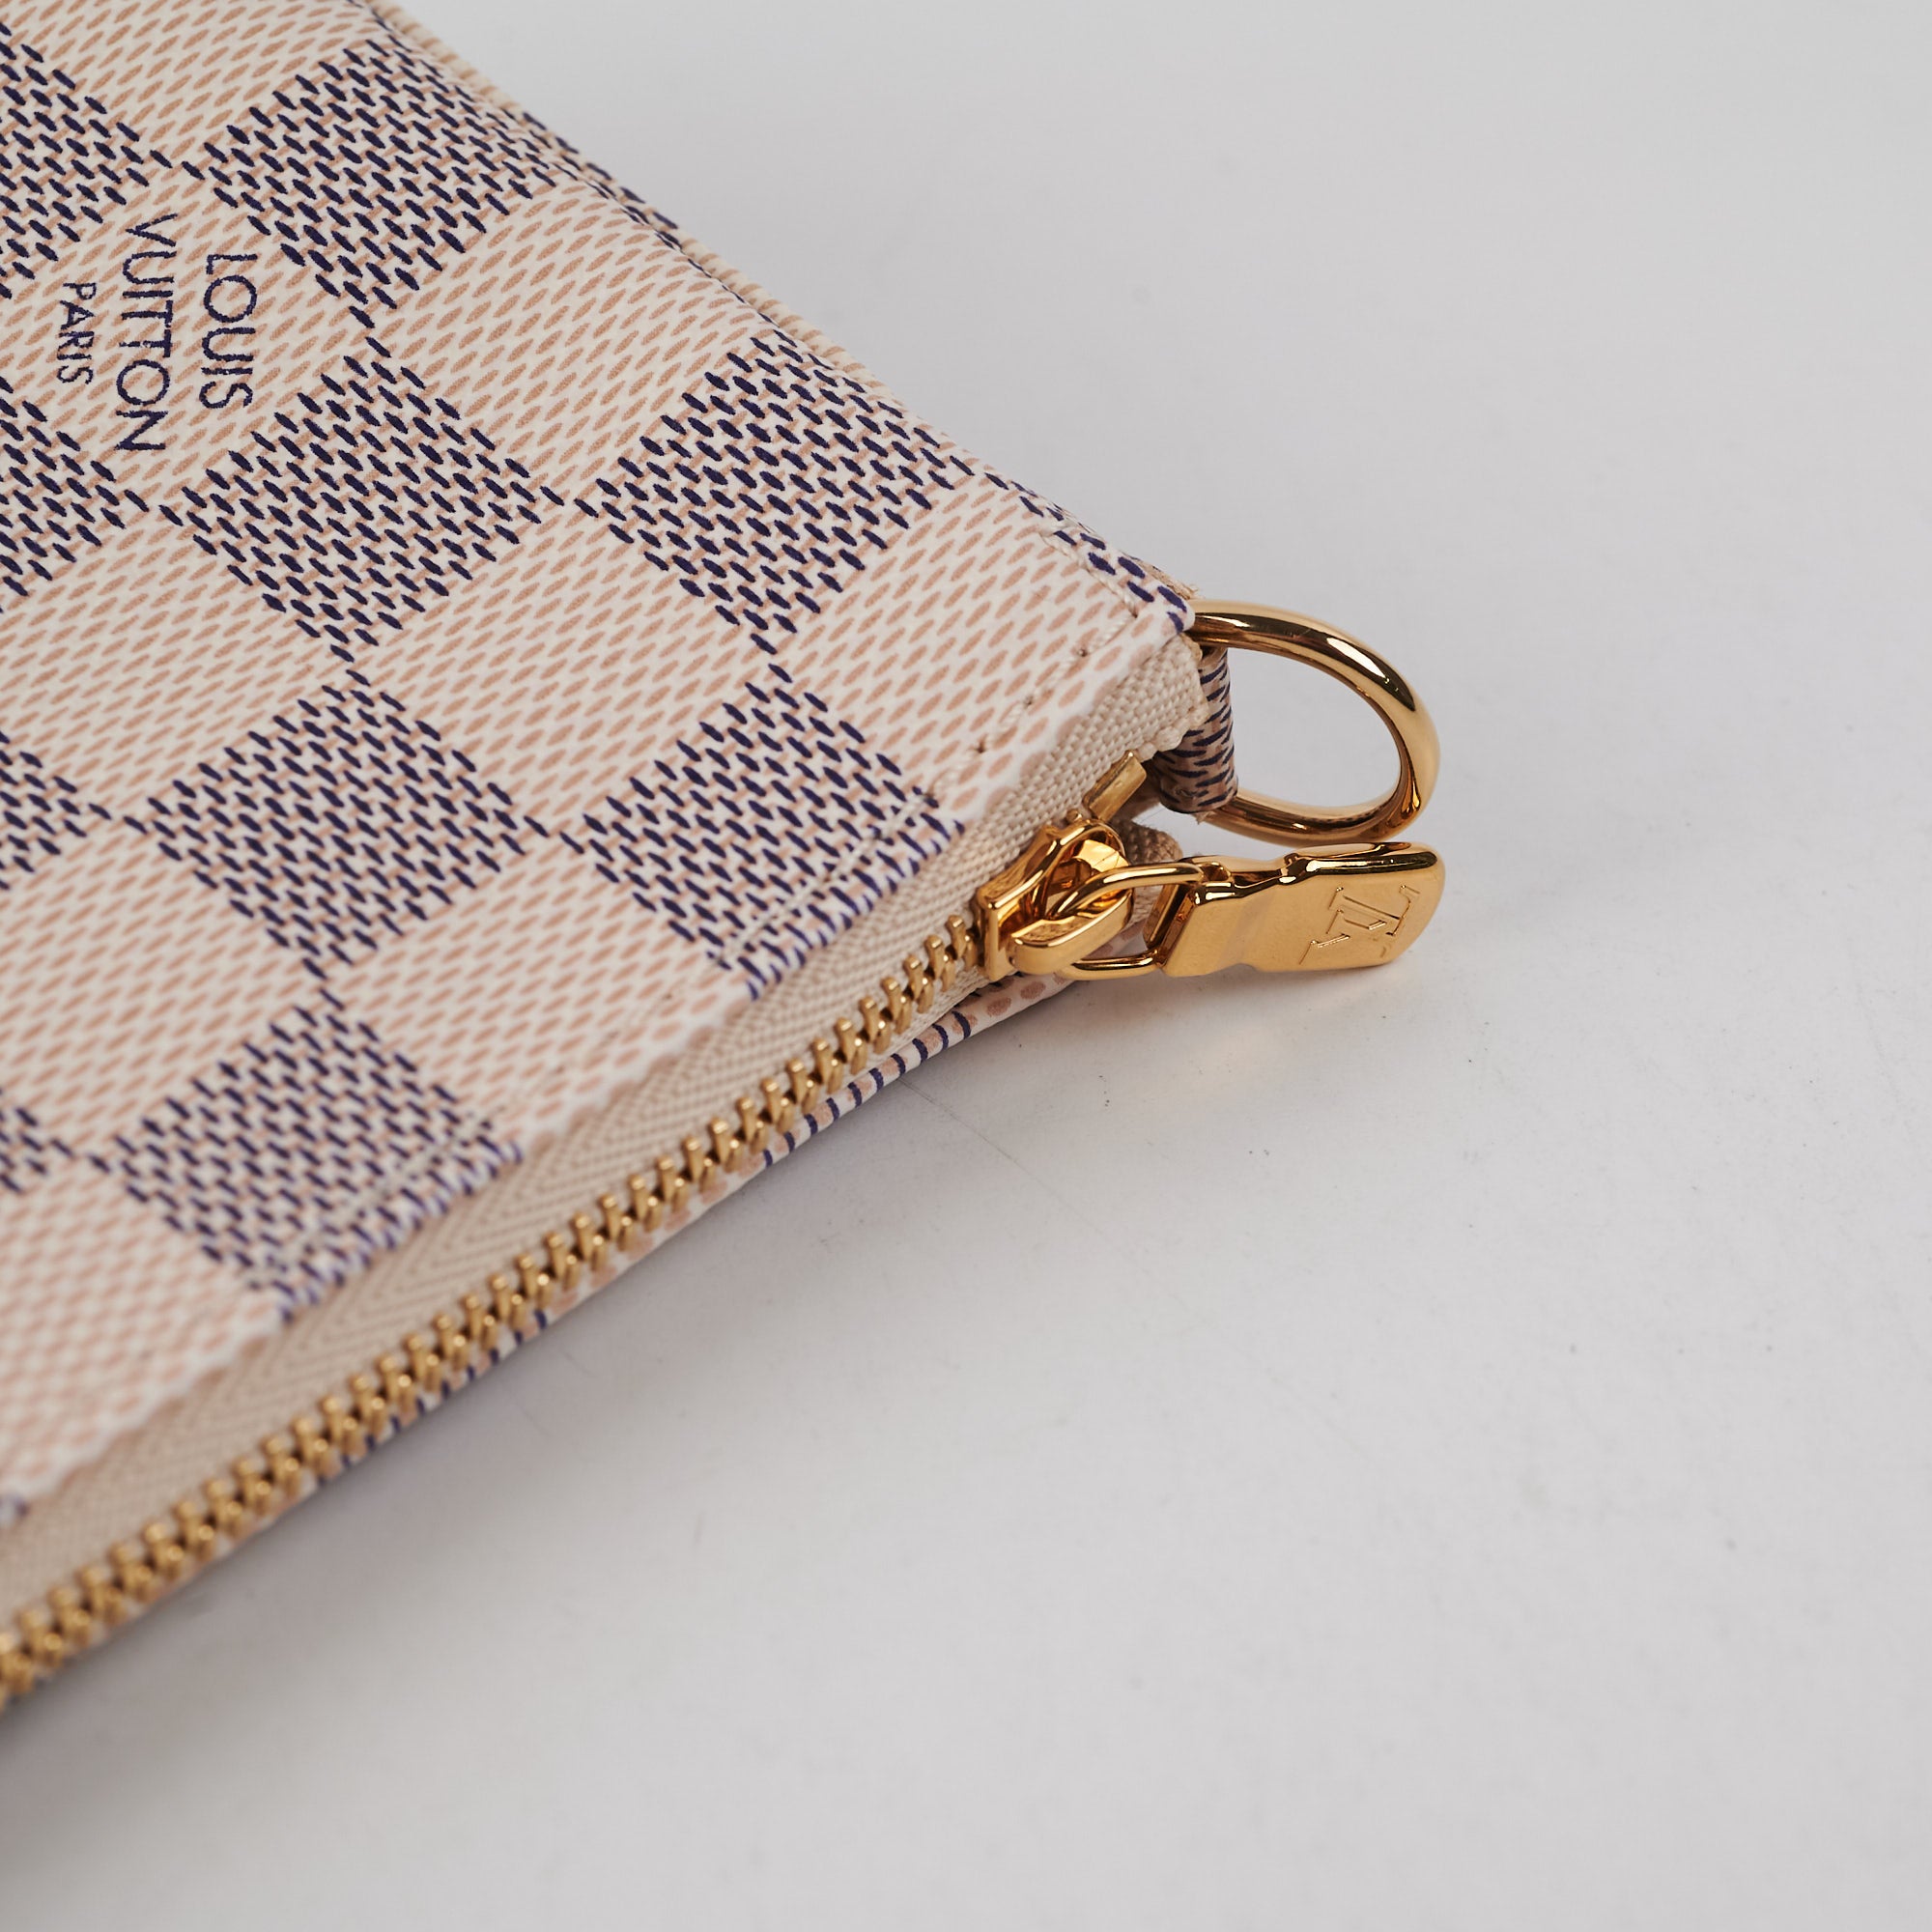 Louis Vuitton Pochette Damier Azur Shoulder Bag - THE PURSE AFFAIR